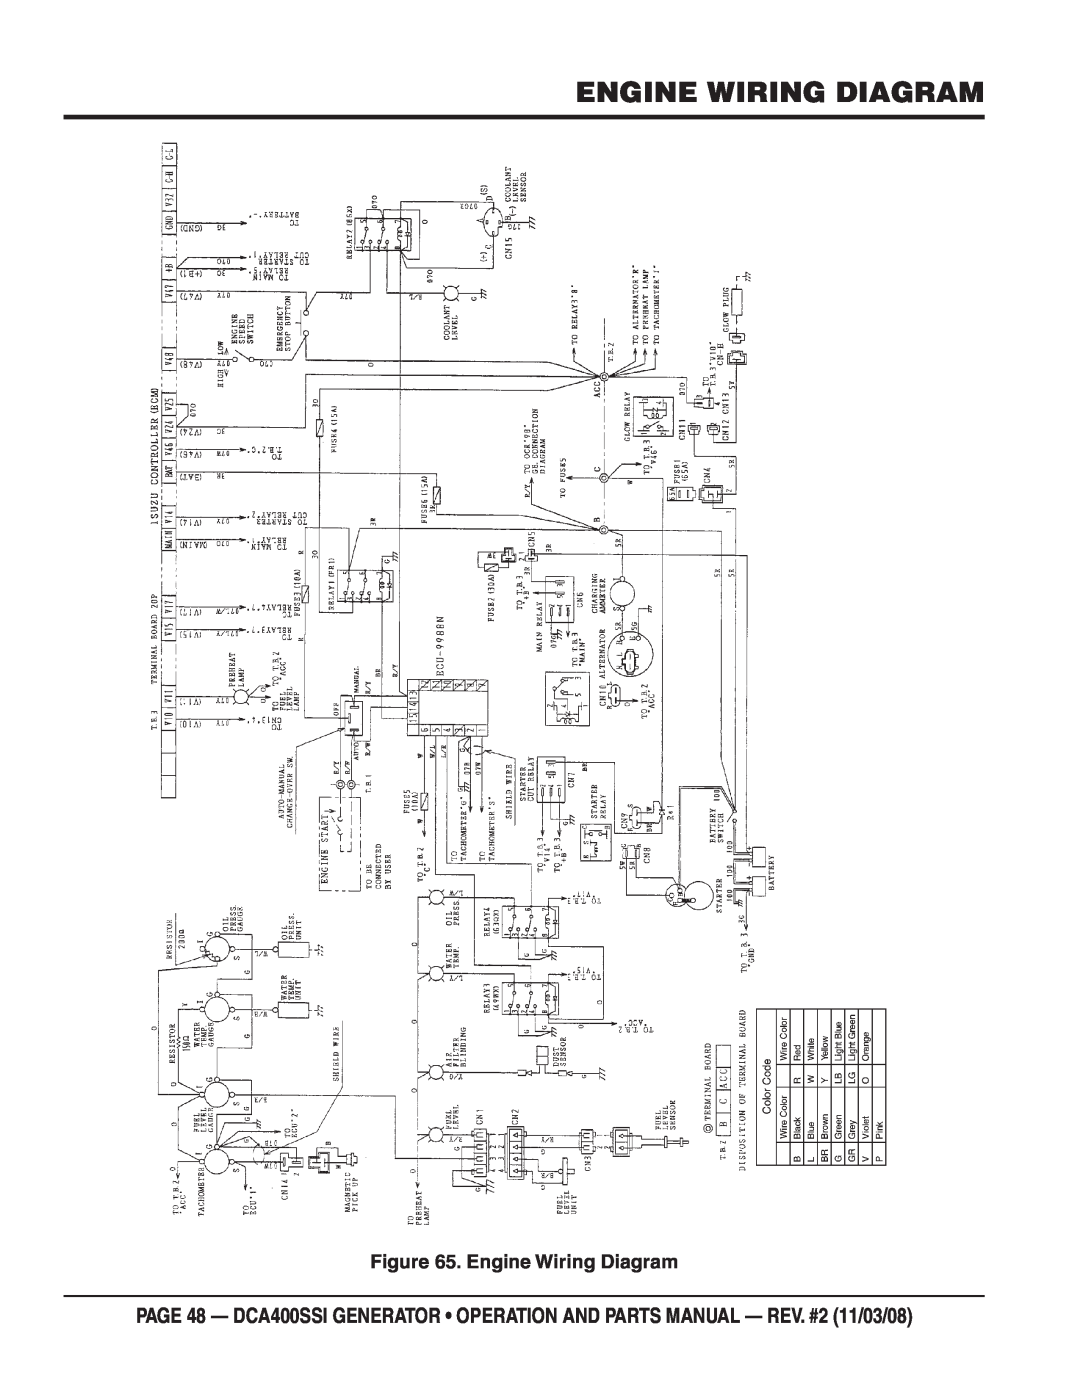 Multiquip DCA400SSI manual Engine Wiring Diagram 